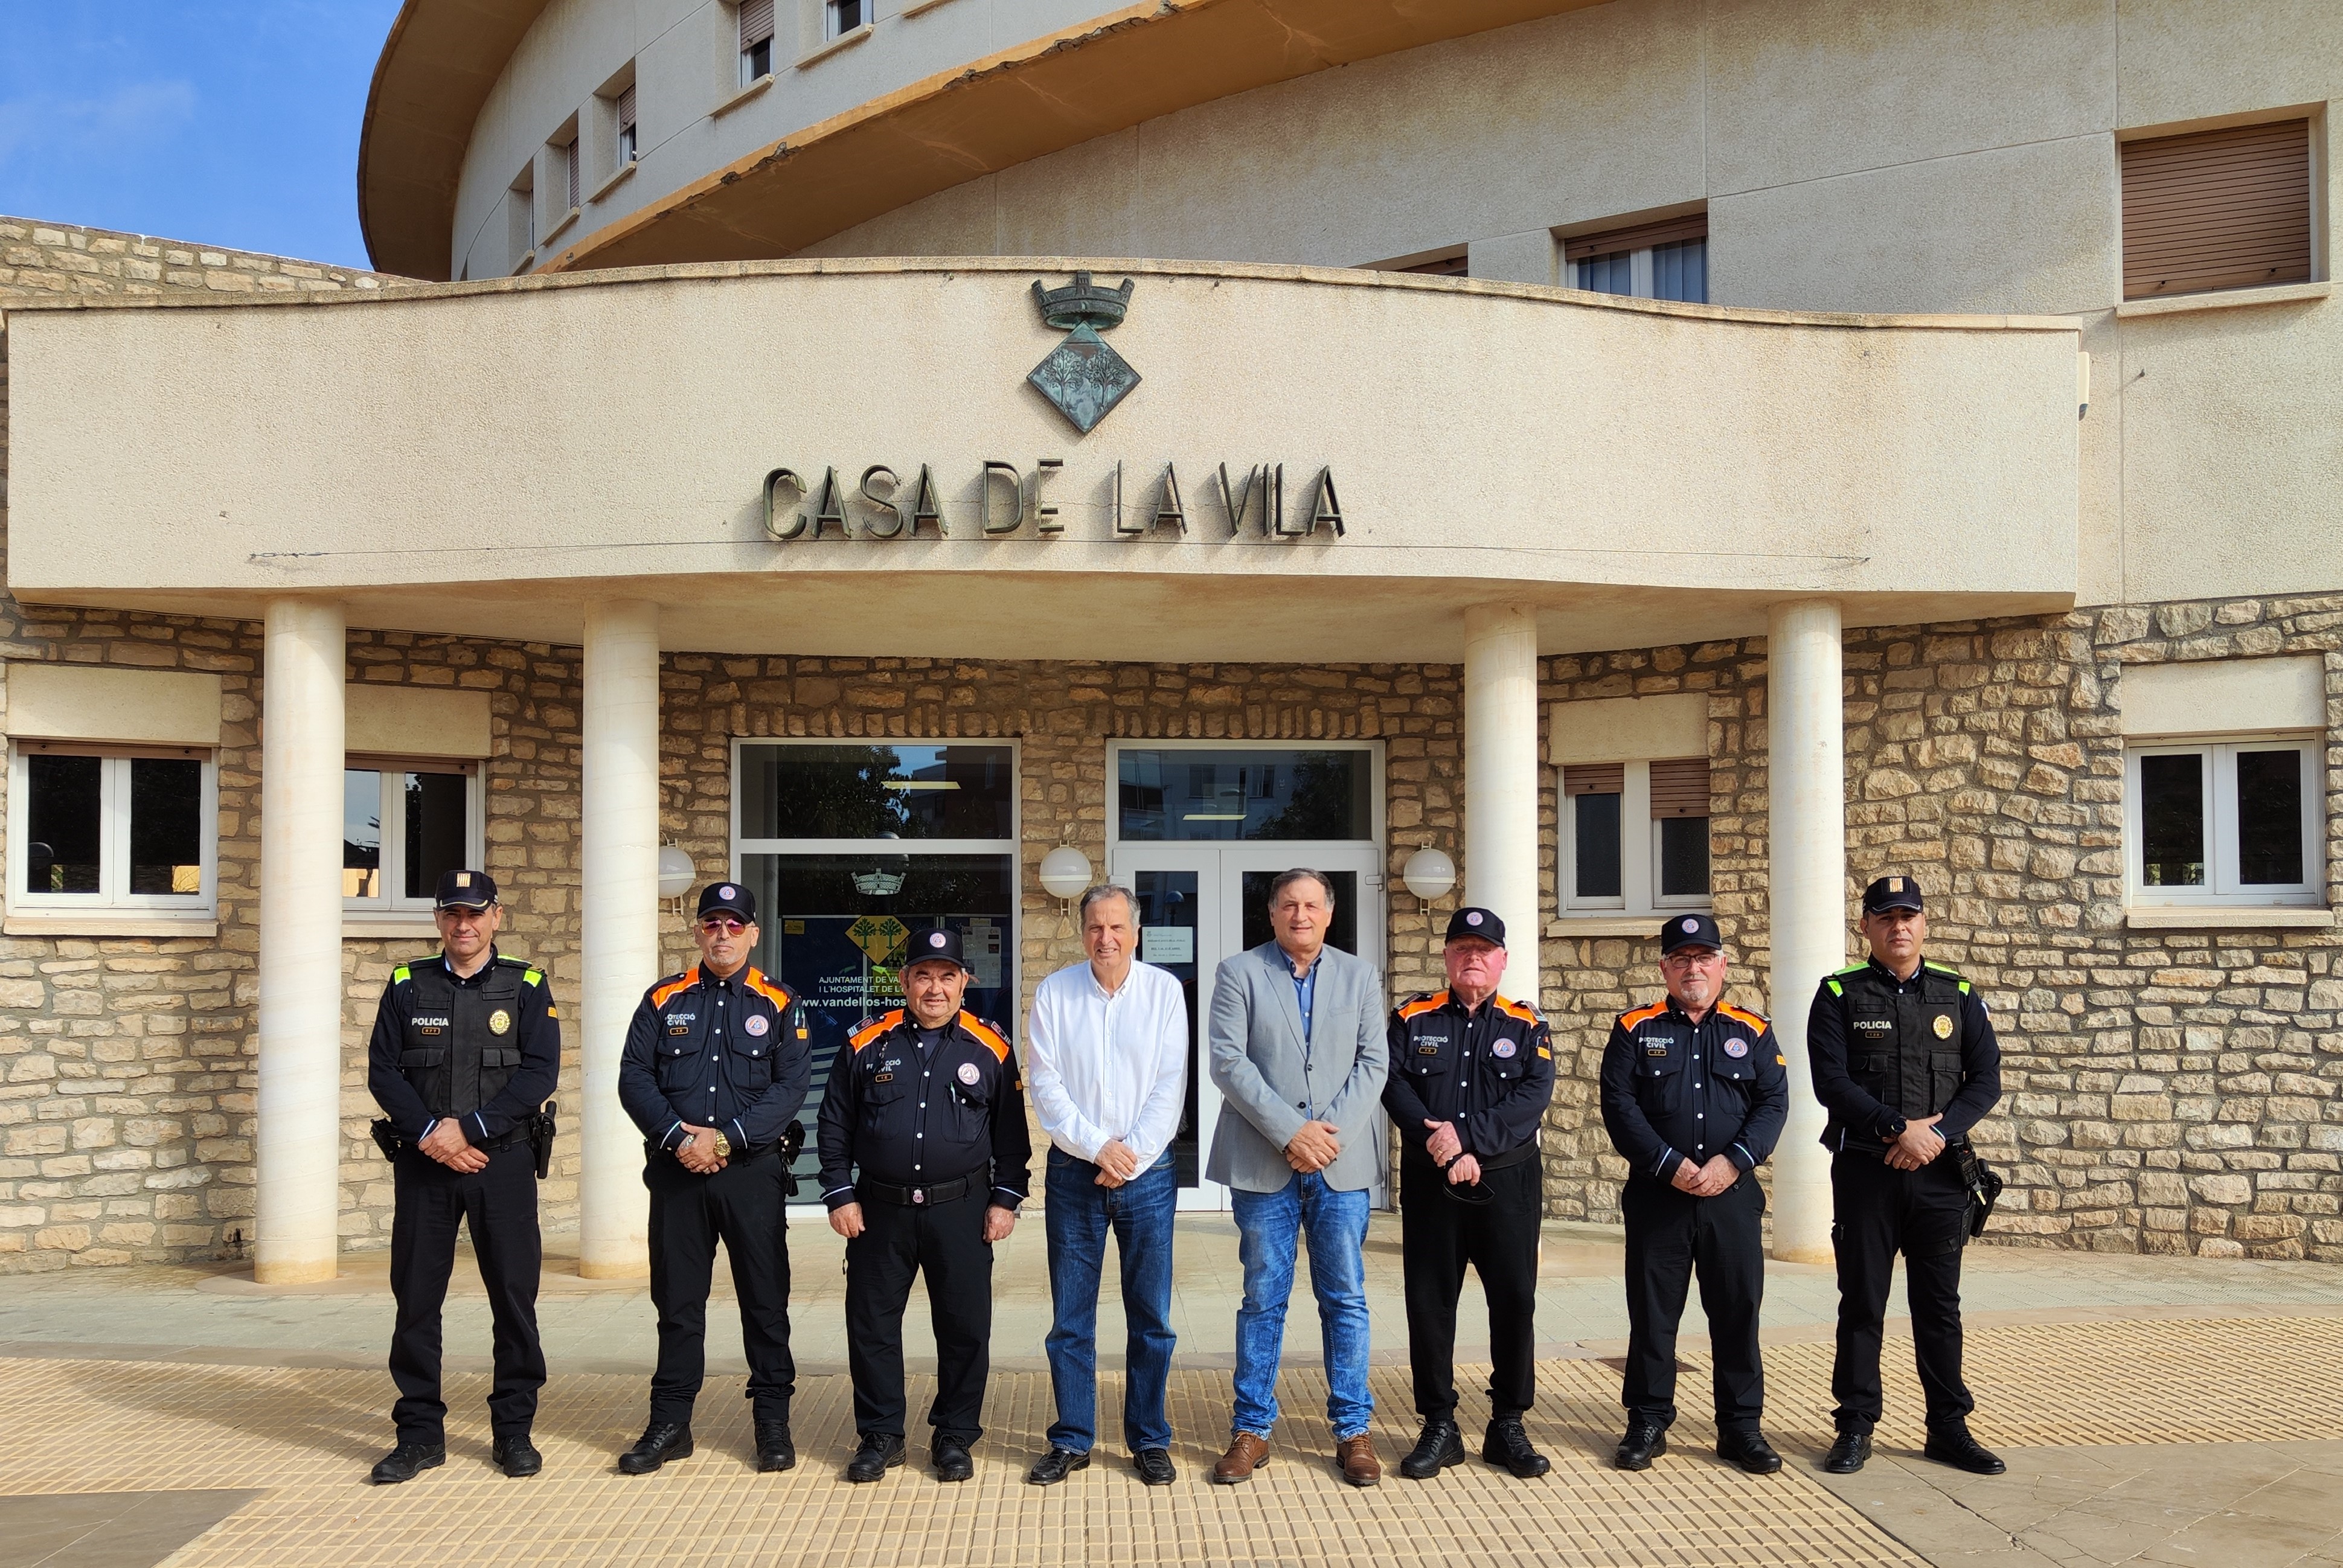 L’Ajuntament de Vandellòs i l’Hospitalet de l’Infant signa un conveni de col·laboració amb la nova associació local de voluntaris de protecció civil